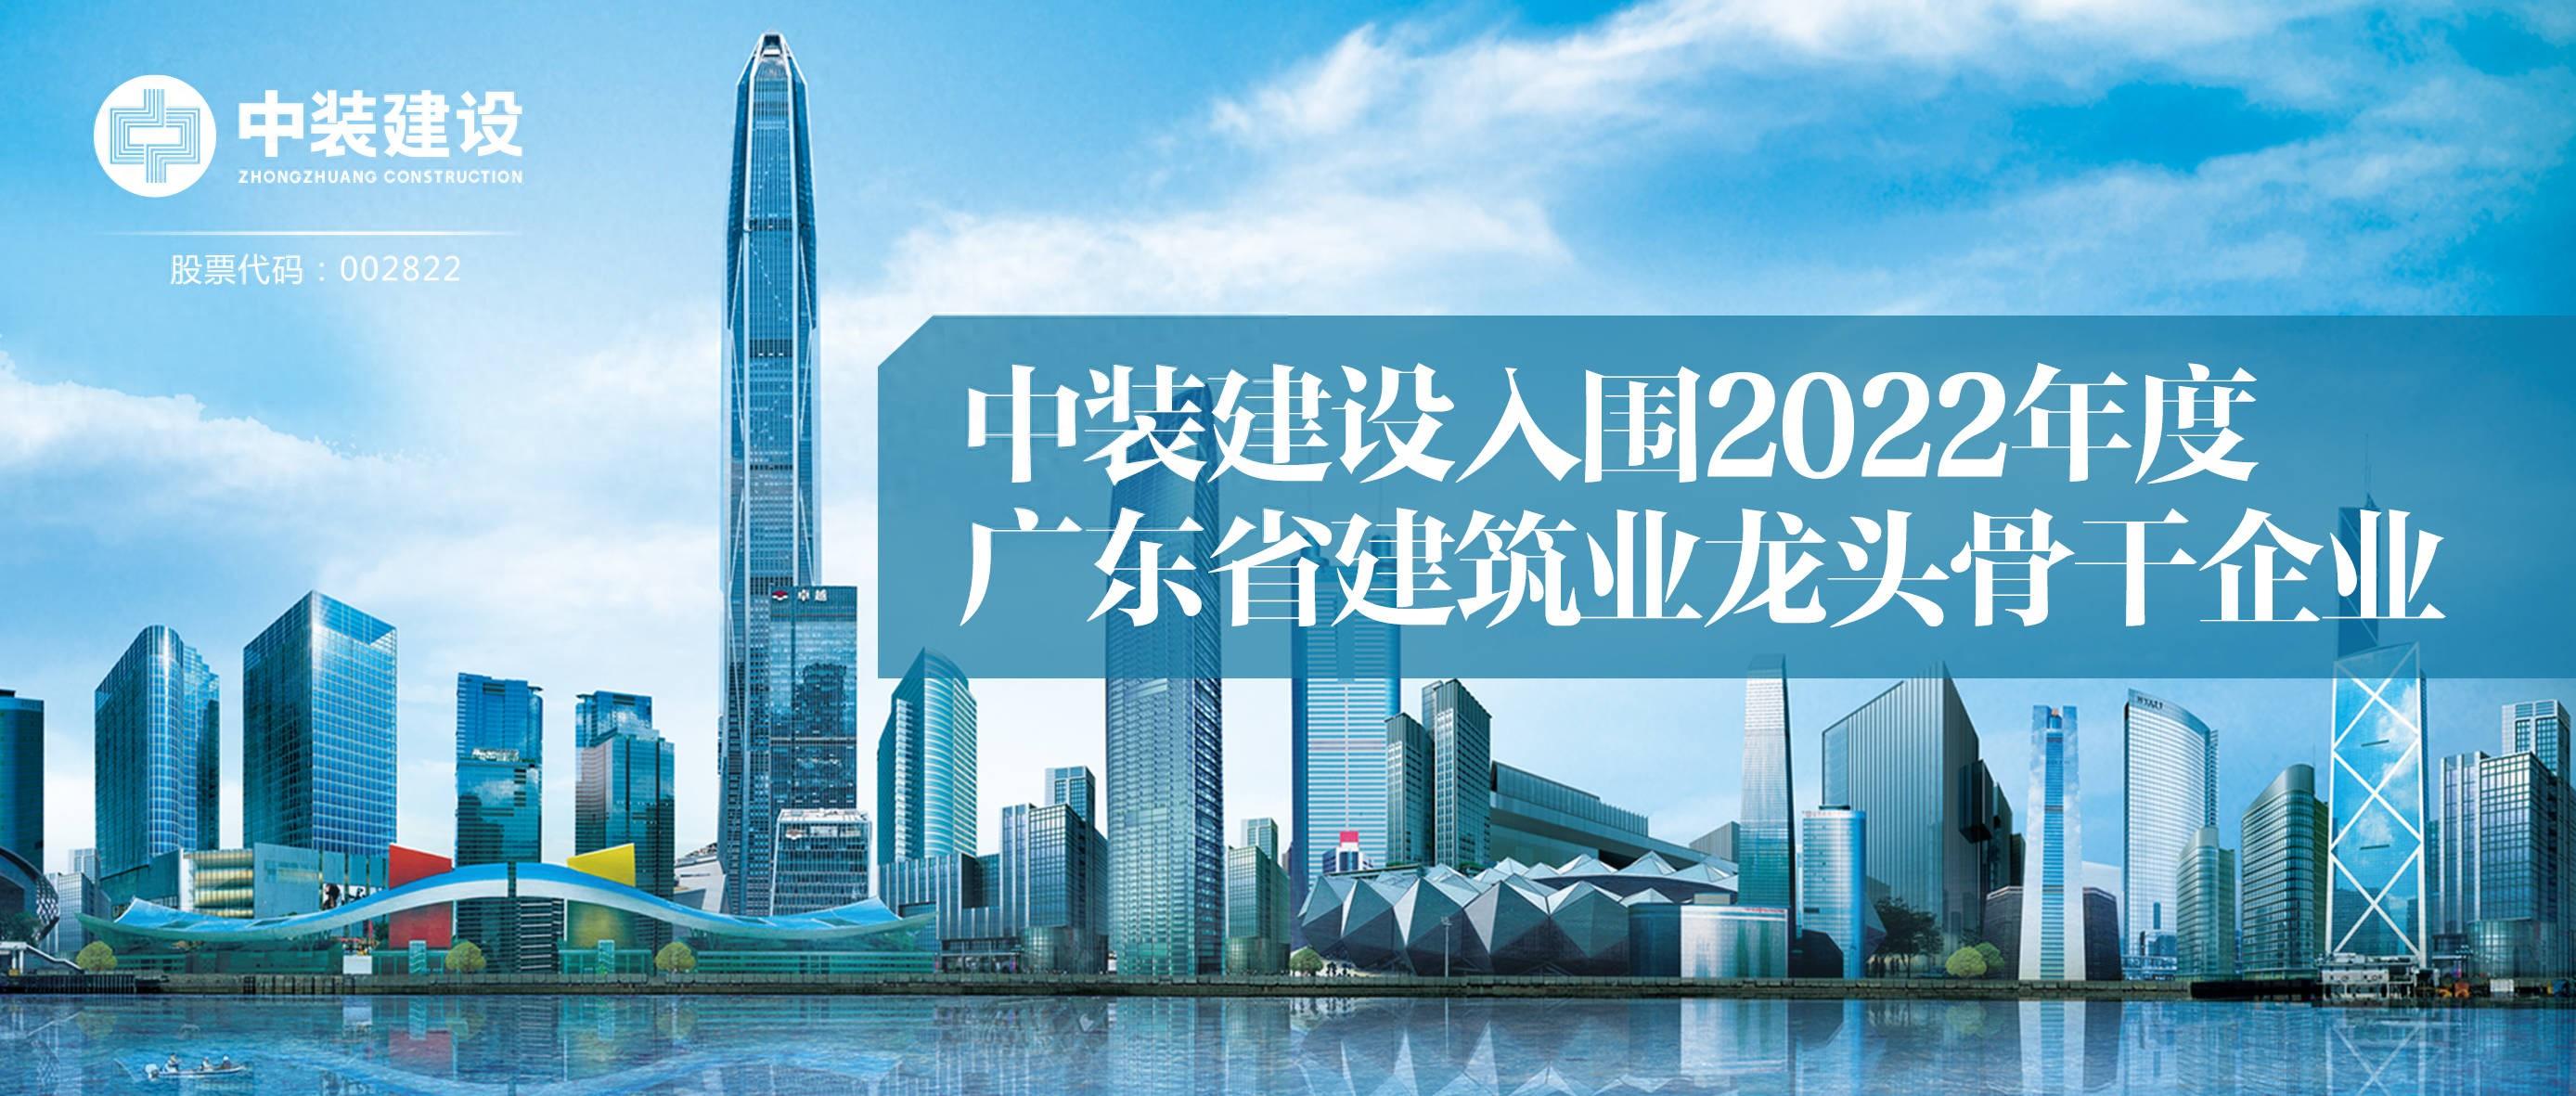 中裝建設入圍2022年度廣東省建筑業龍頭骨干企業